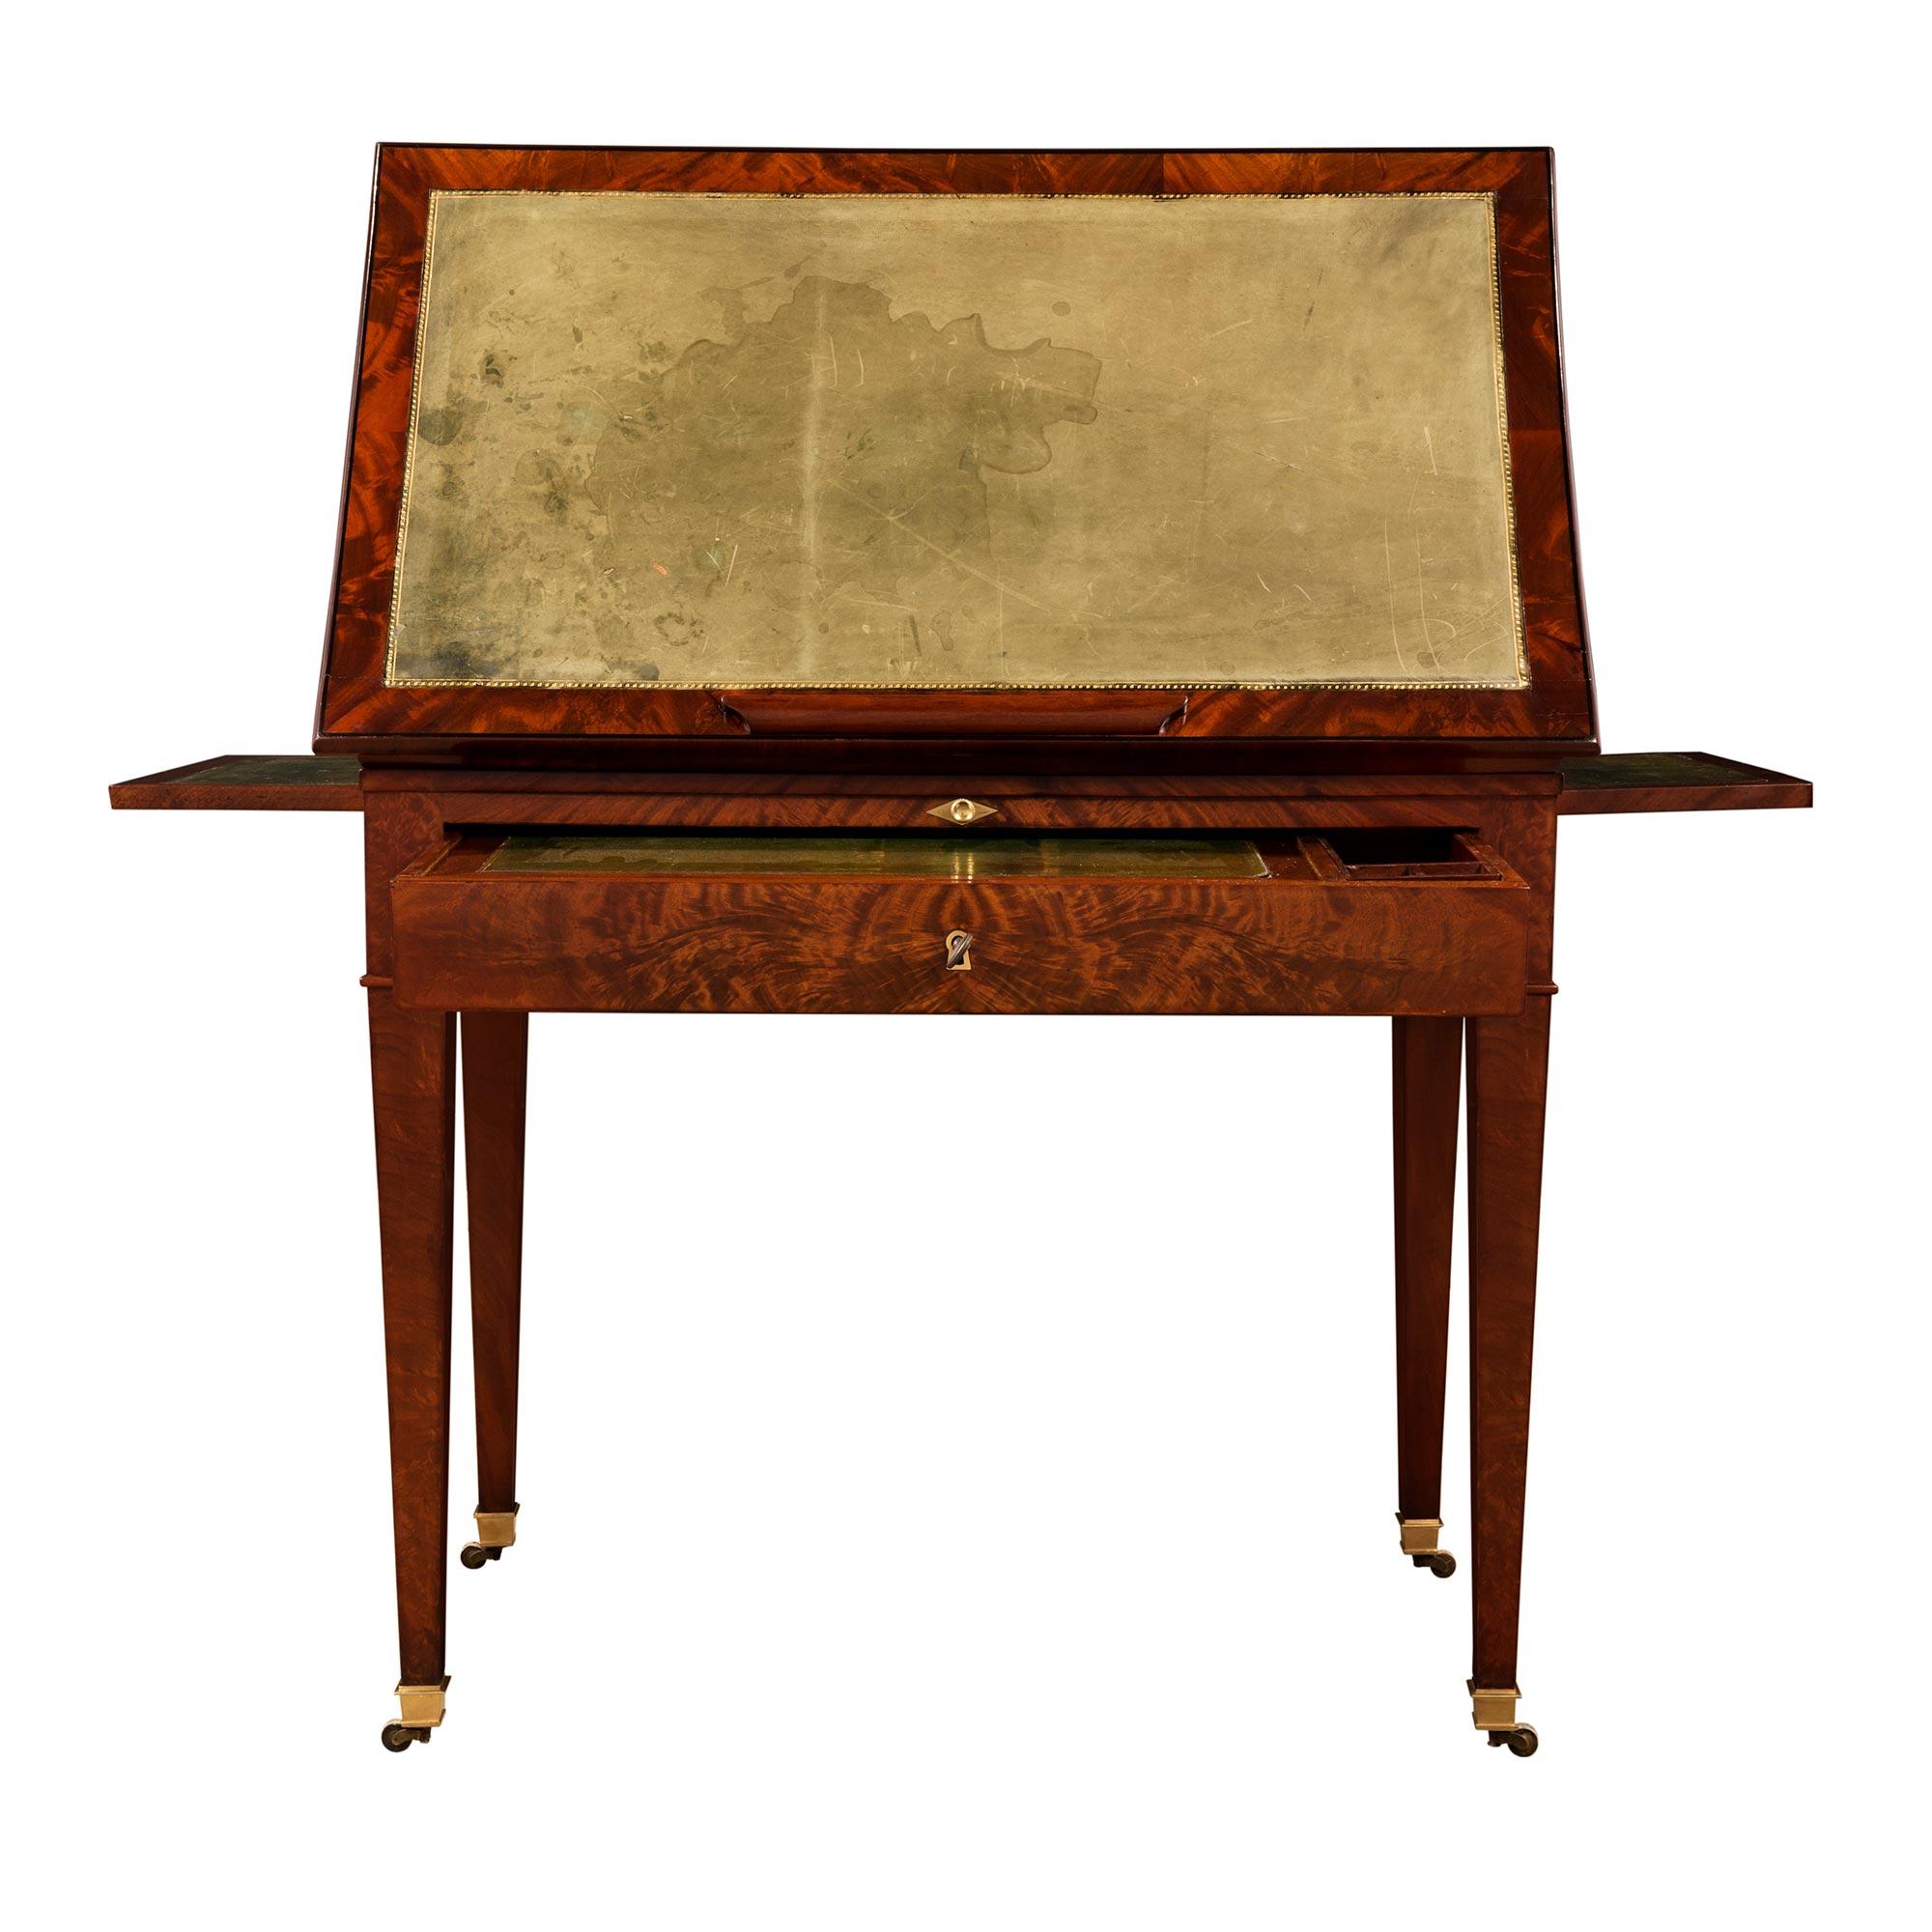 Ein attraktiver und ungewöhnlicher französischer Mahagonischreibtisch 'A la Tronchin' aus dem 19. Jahrhundert im Stil Louis XVI. Der Schreibtisch steht auf quadratischen, spitz zulaufenden Beinen mit originalen Ormolu-Sabots und -Rollen. Die gerade